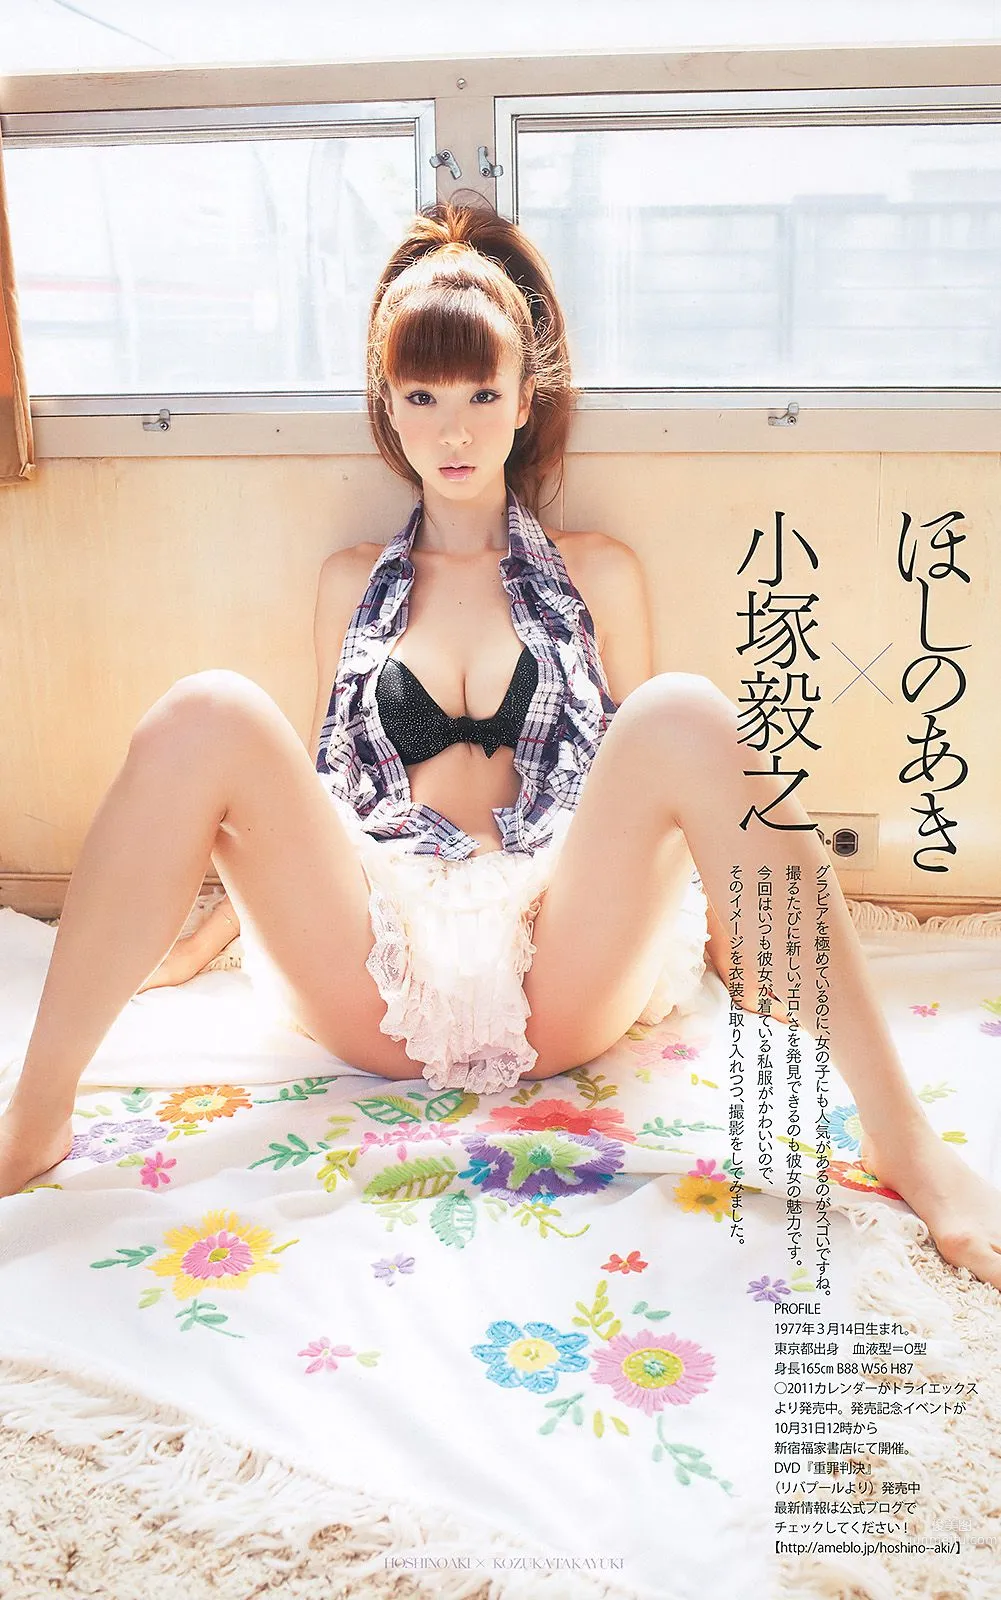 安めぐみ 愛衣 逢沢りな [Weekly Playboy] 2010年No.43 写真杂志39